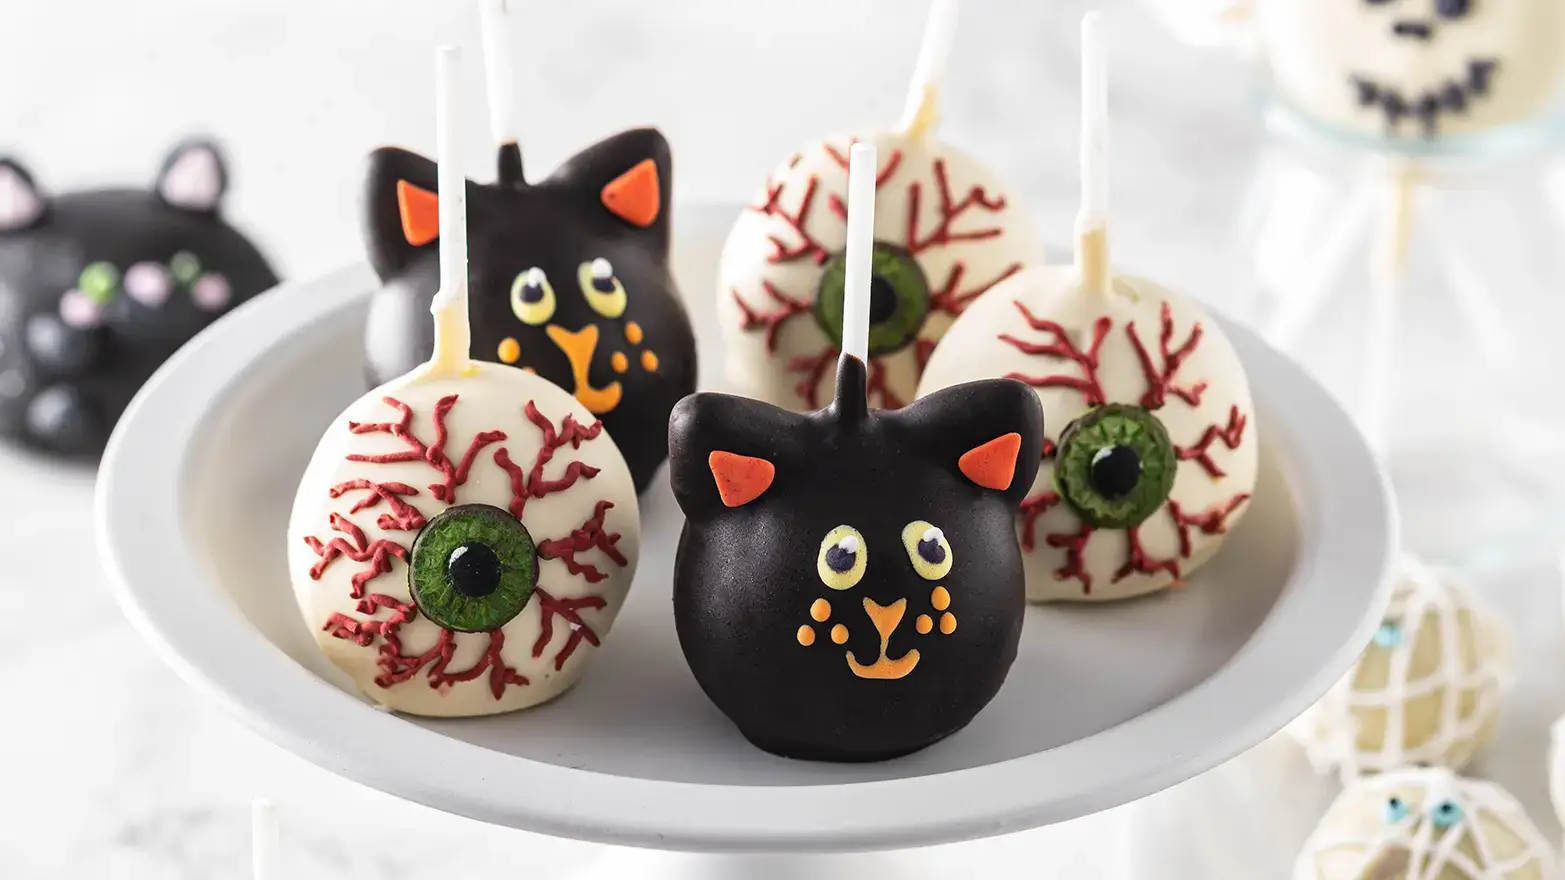 Black cat and eyeball cake pops for Halloween dessert
